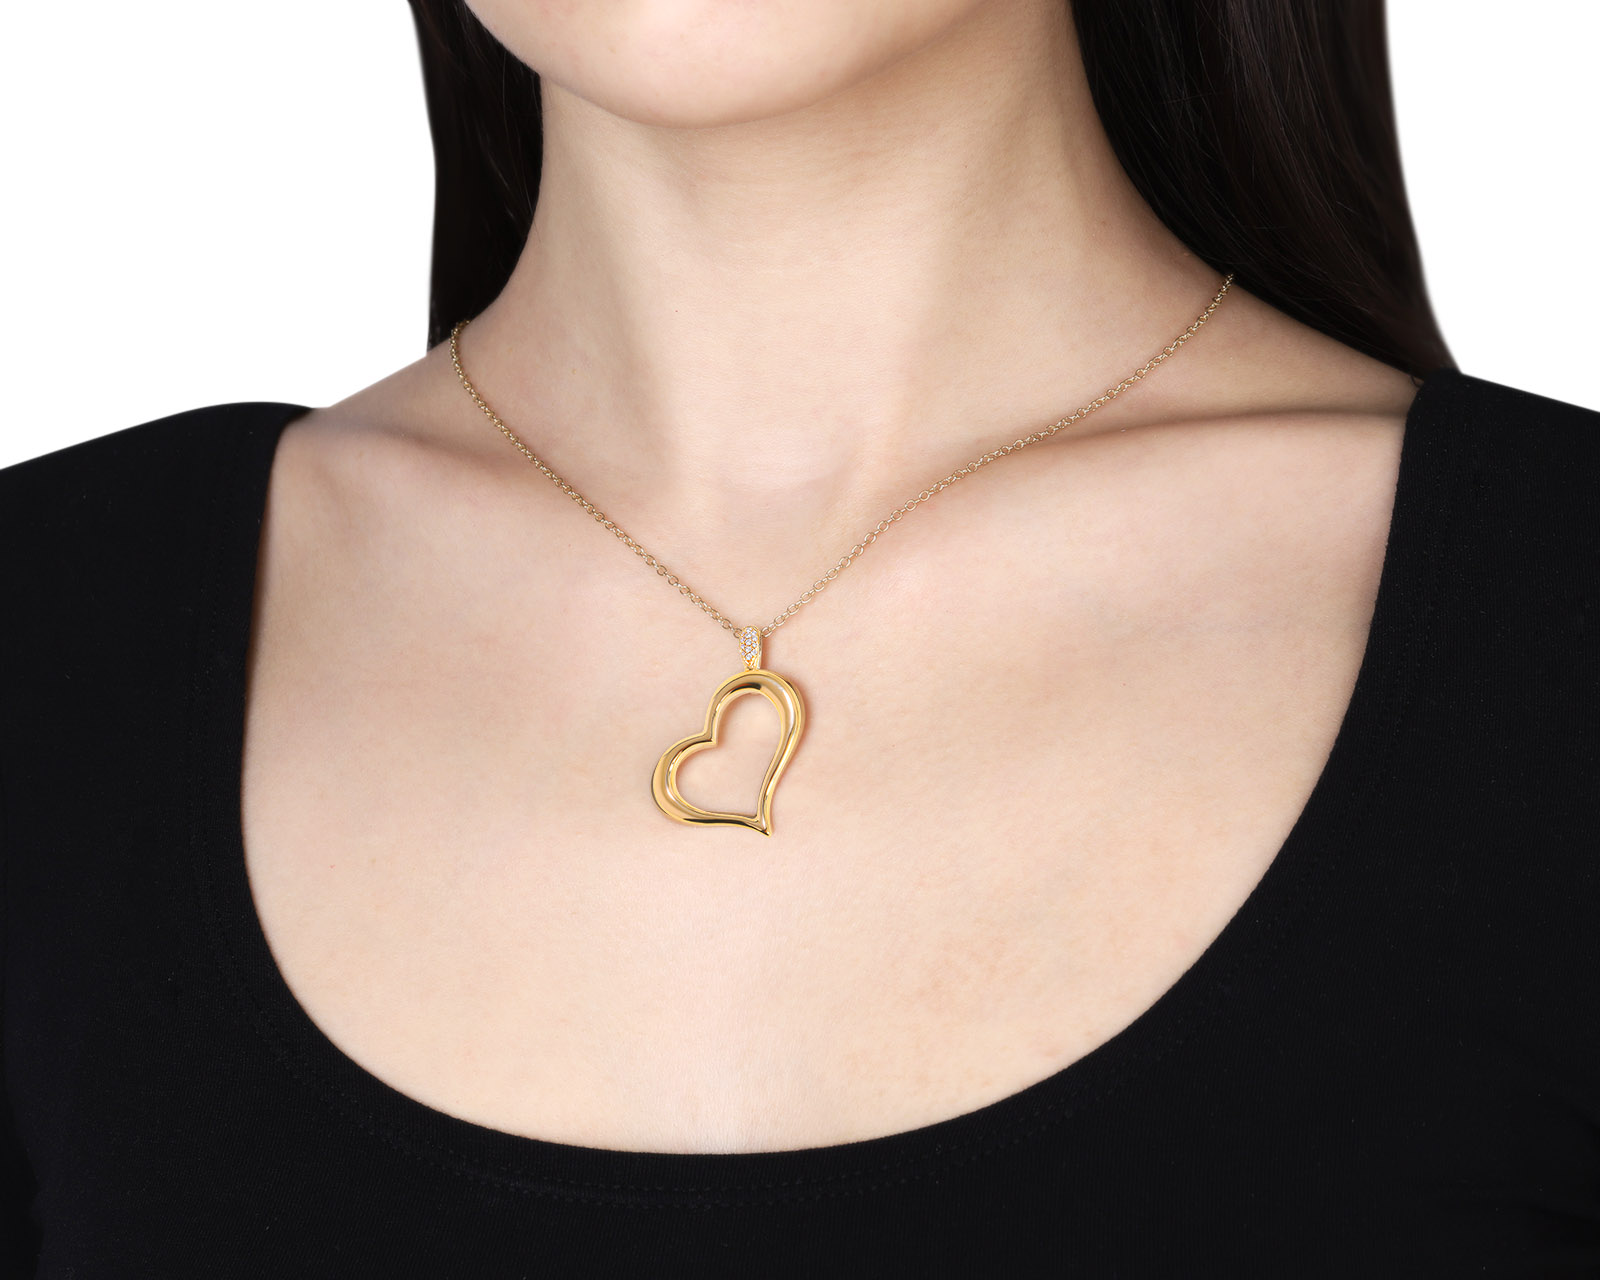 Оригинальный золотой кулон Piaget Heart